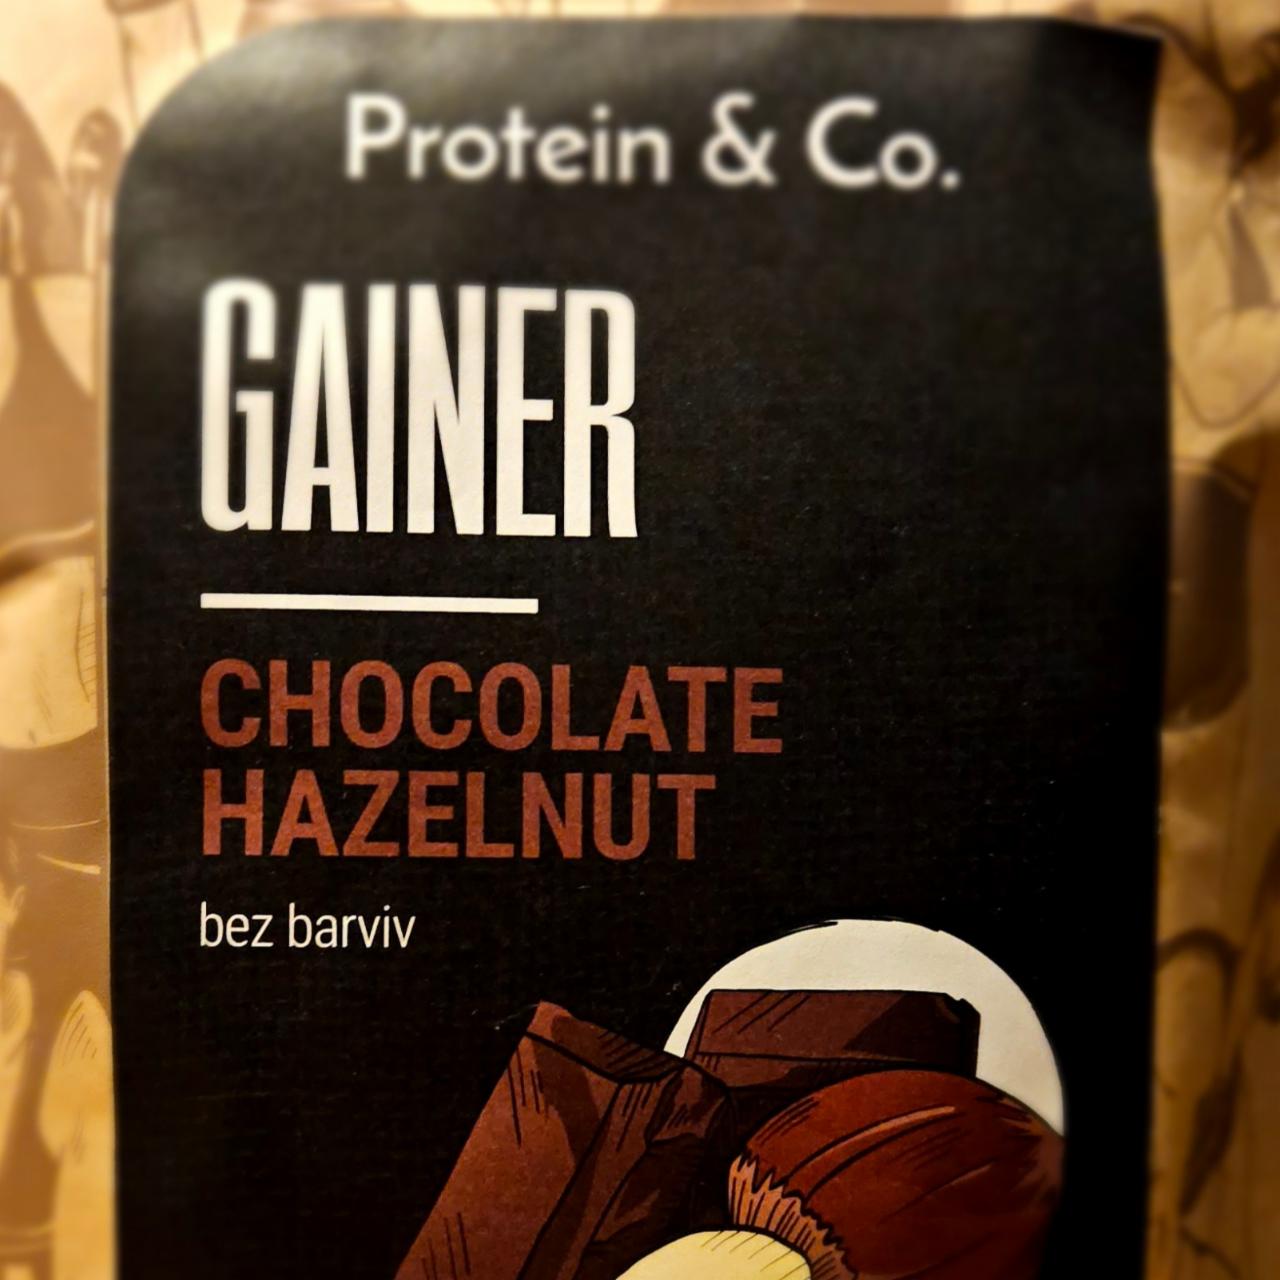 Fotografie - Gainer Chocolate Hazelnut Protein & Co.